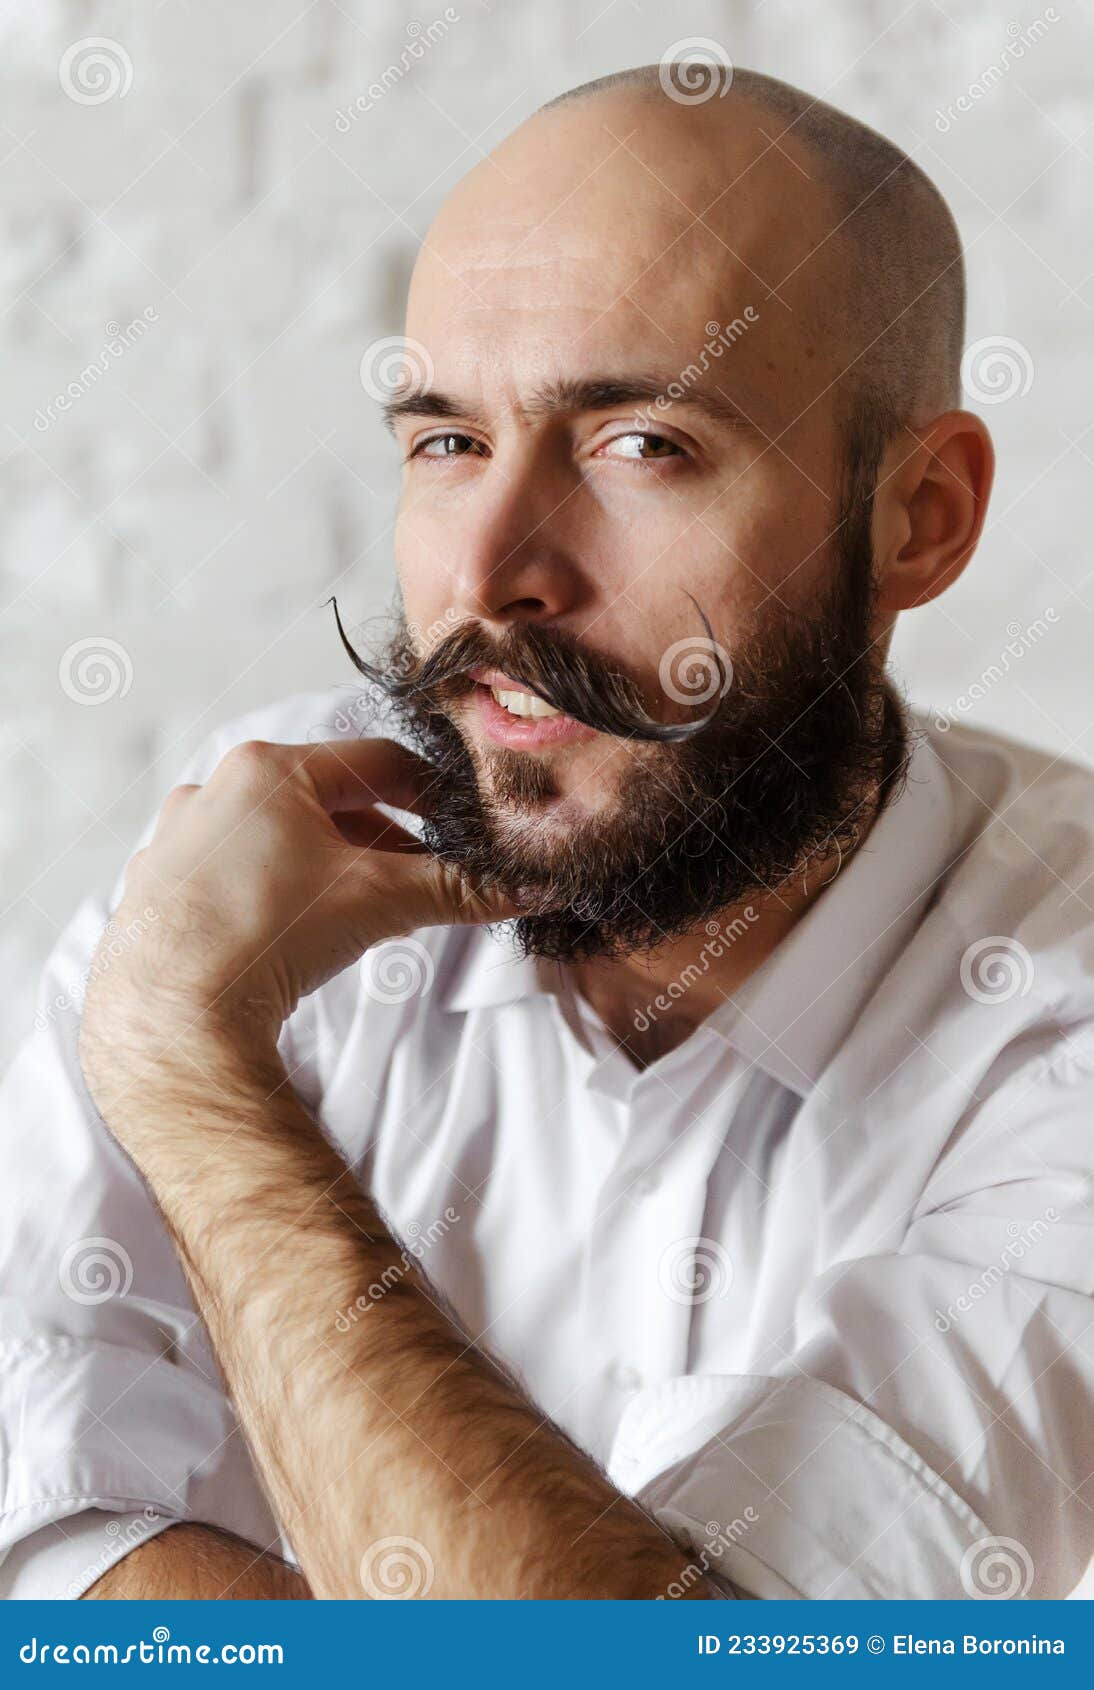 Homens Carecas de Barba fazem muito sucesso • Beard